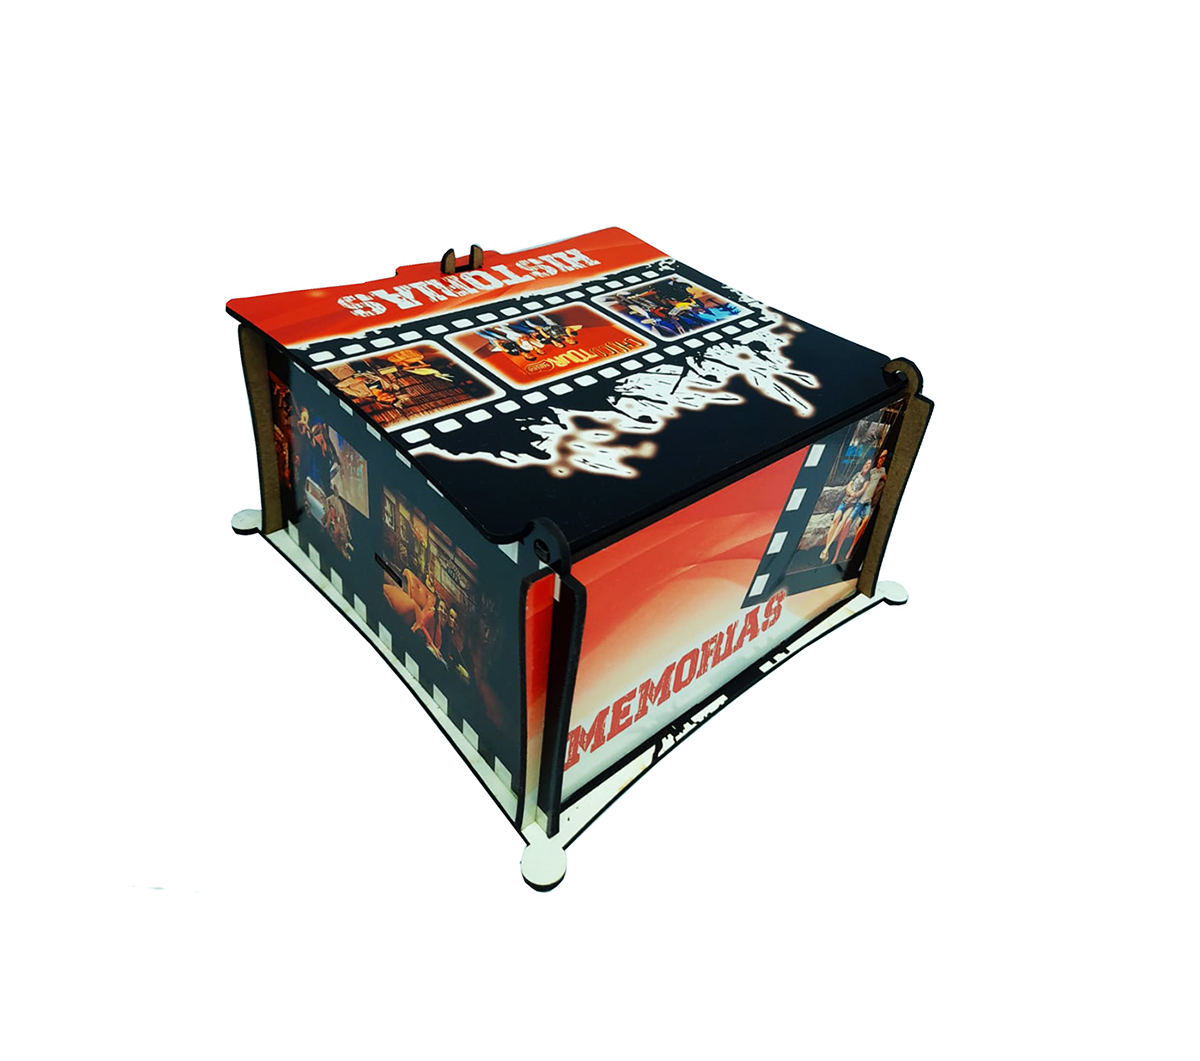 Kit Quebra-cabeça presente de 300 peças em mdf Momentos com caixa especial personalizada